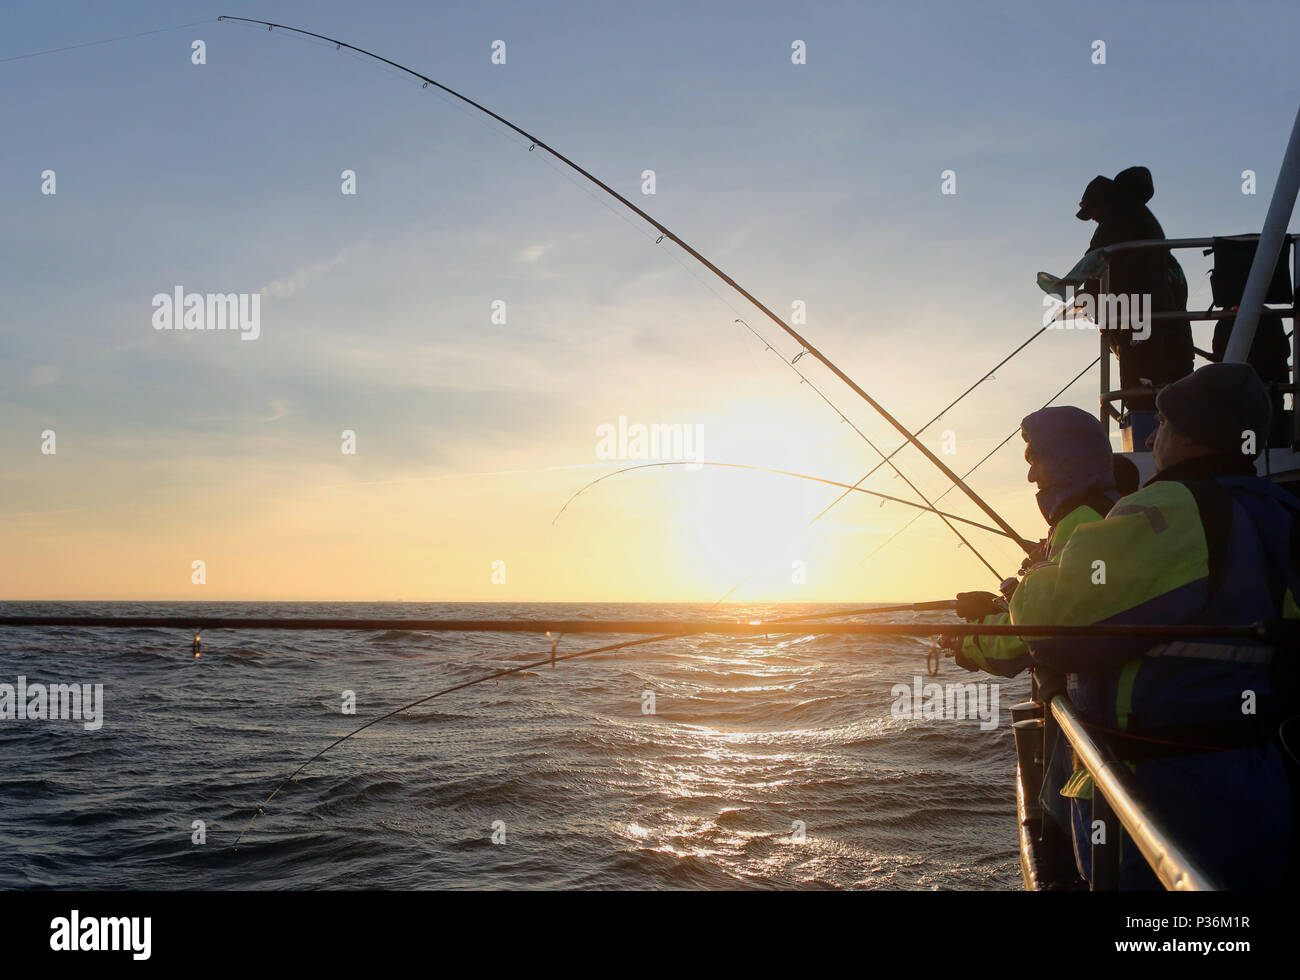 Pesca d'alto mare immagini e fotografie stock ad alta risoluzione - Alamy